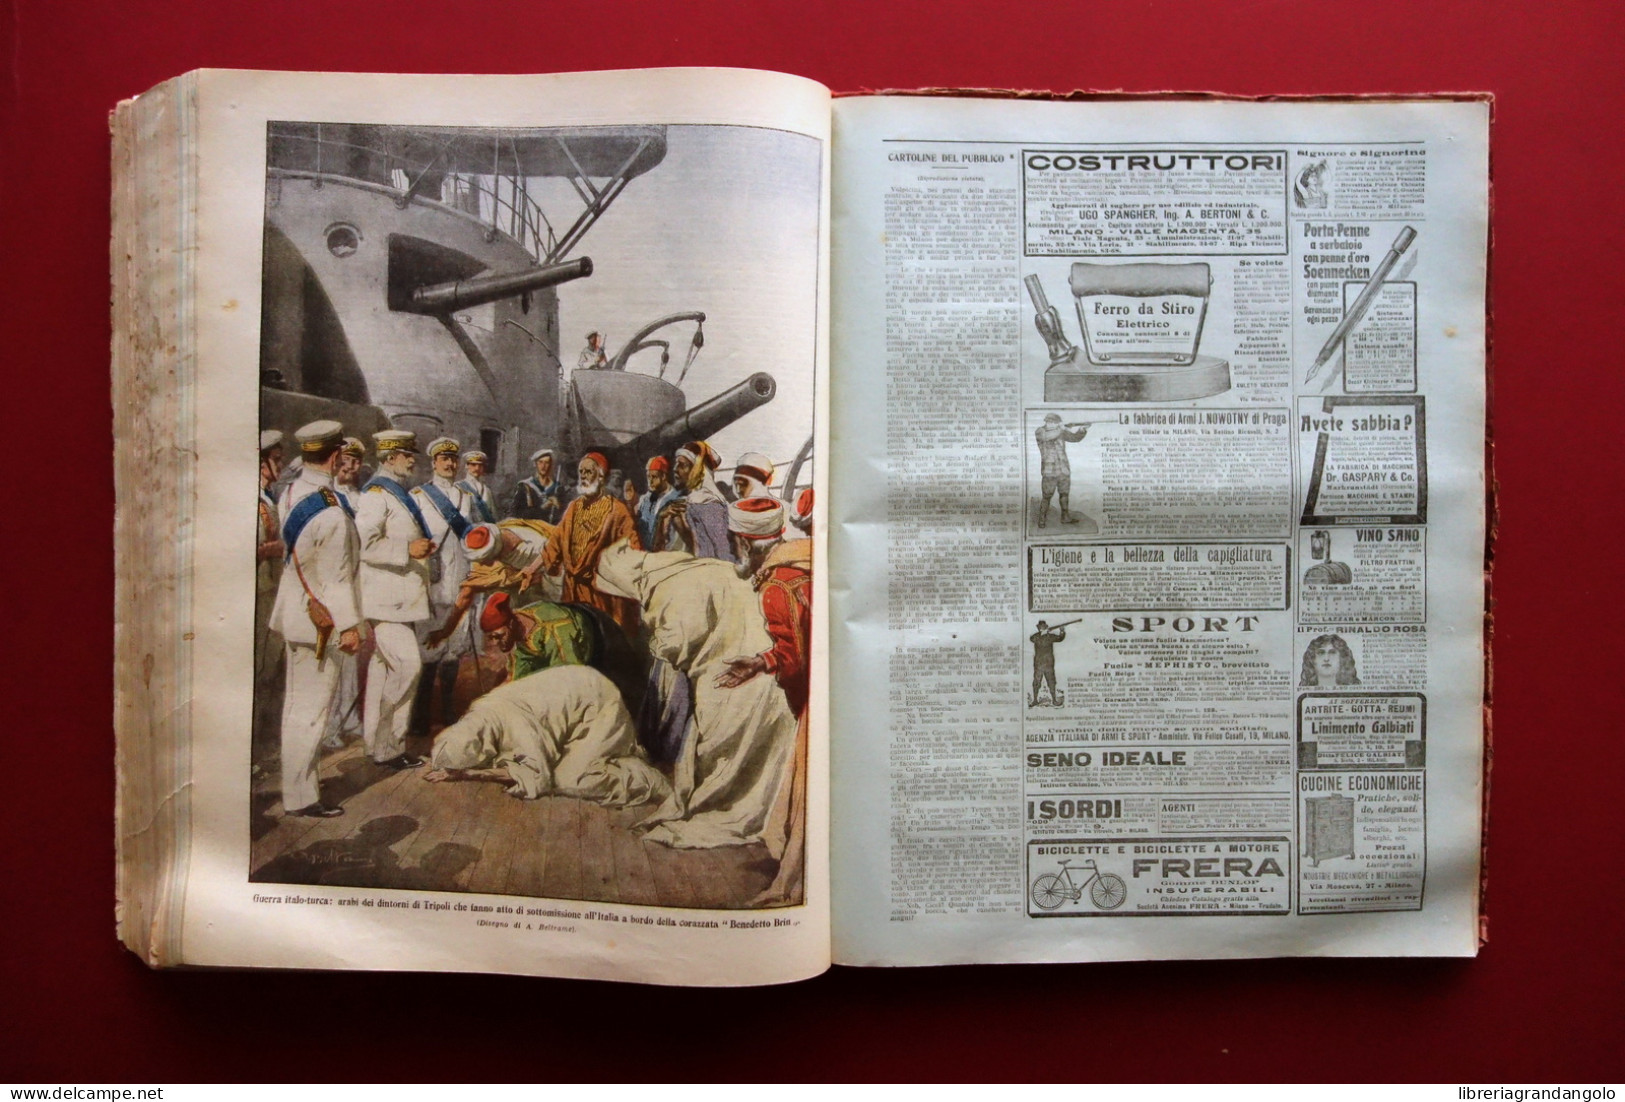 La Domenica del Corriere Anno 13 53 Numeri 1911 Anno Completo Guerra di Libia